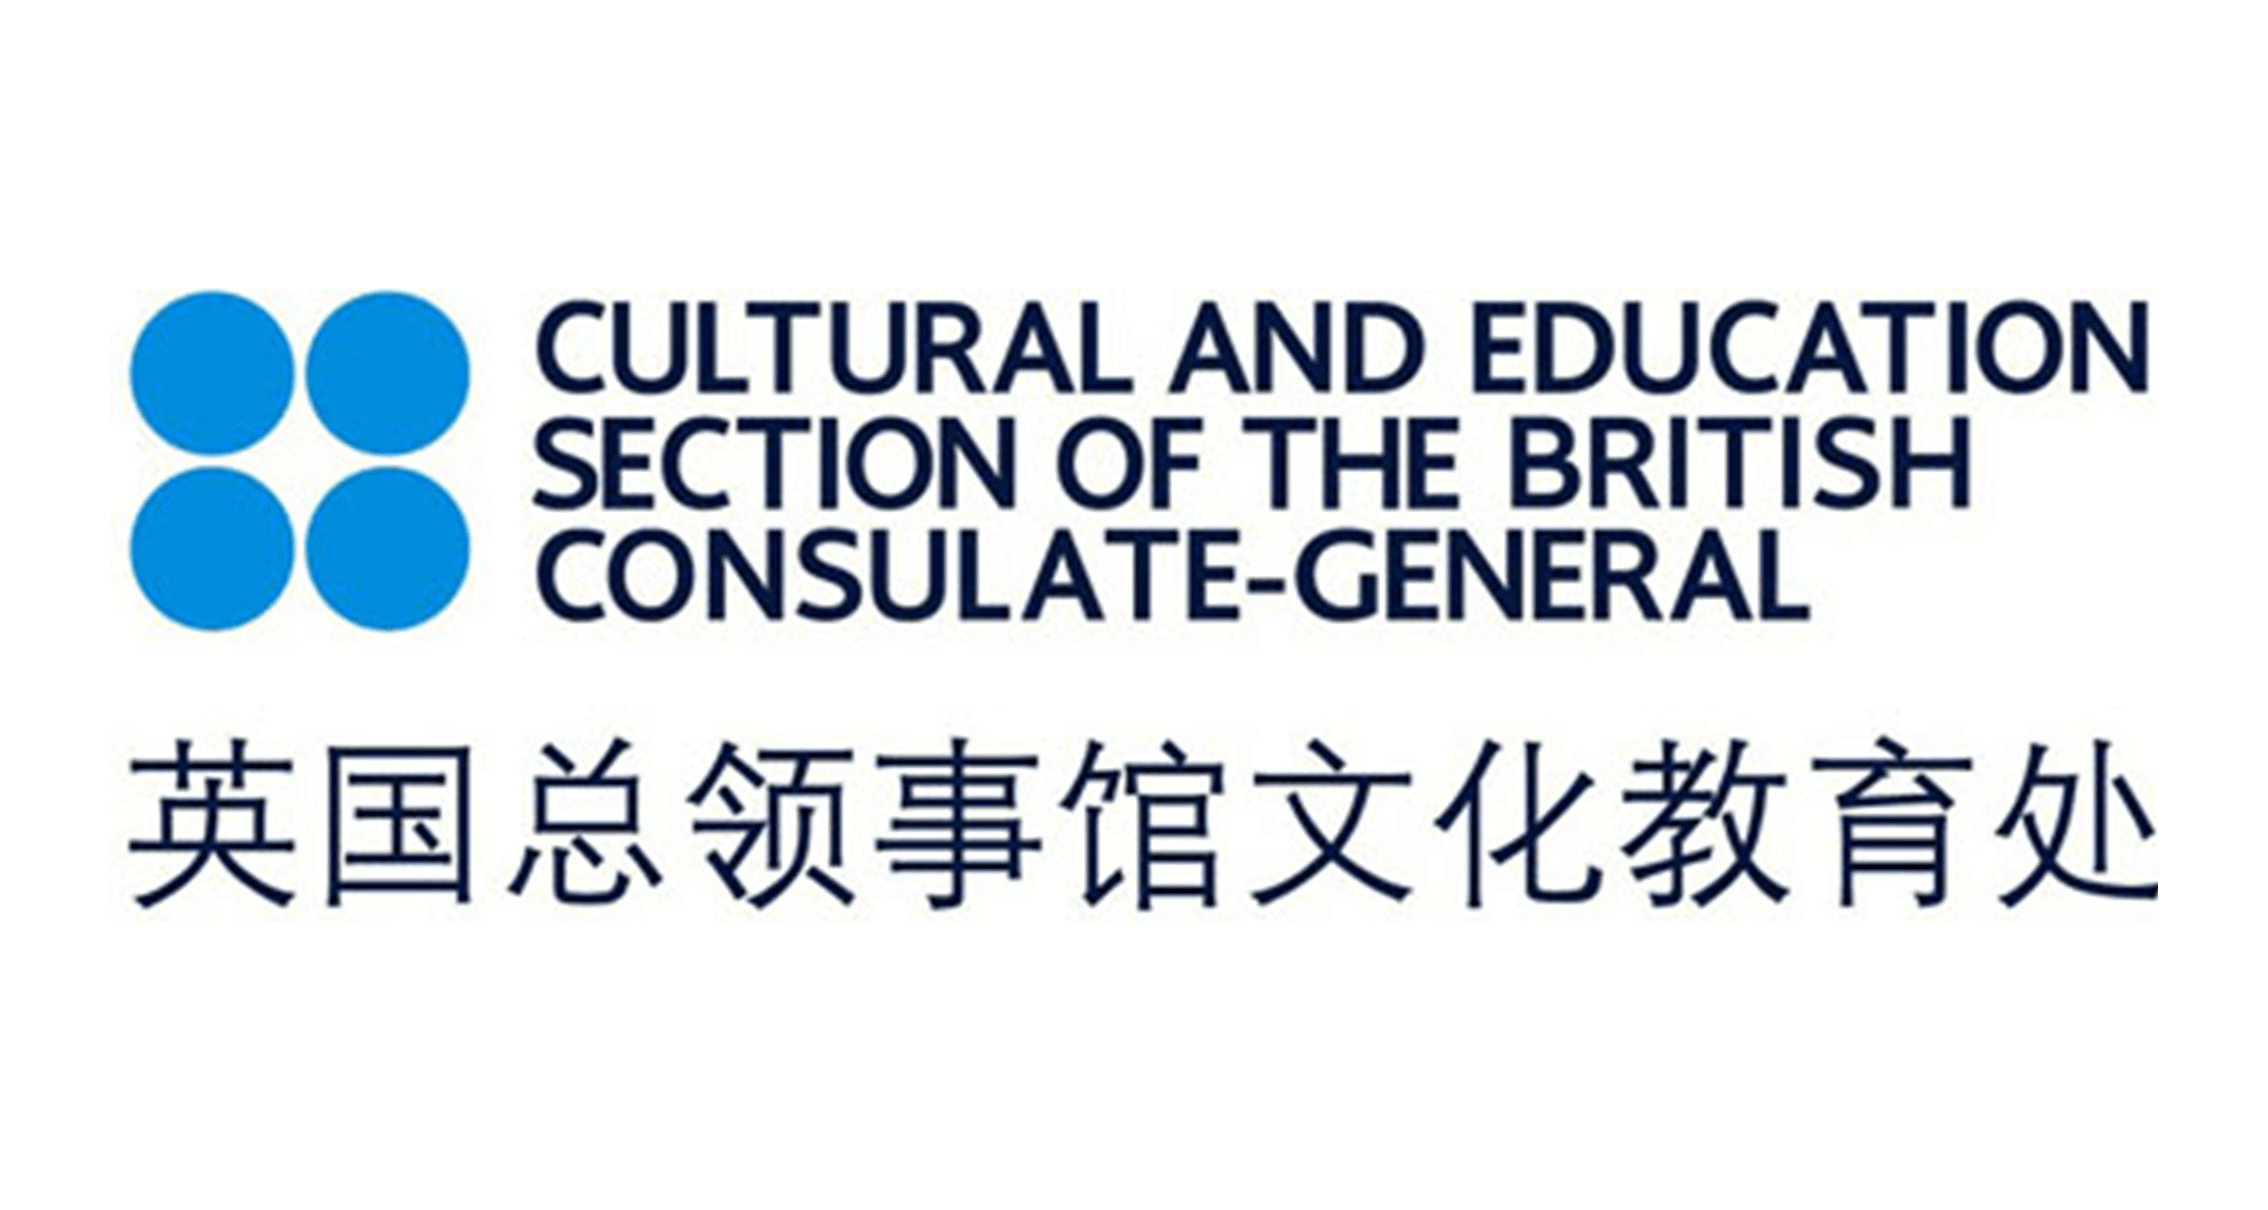 英国总领事馆文化教育处 Cultural and Education Section of the British Consulate-General